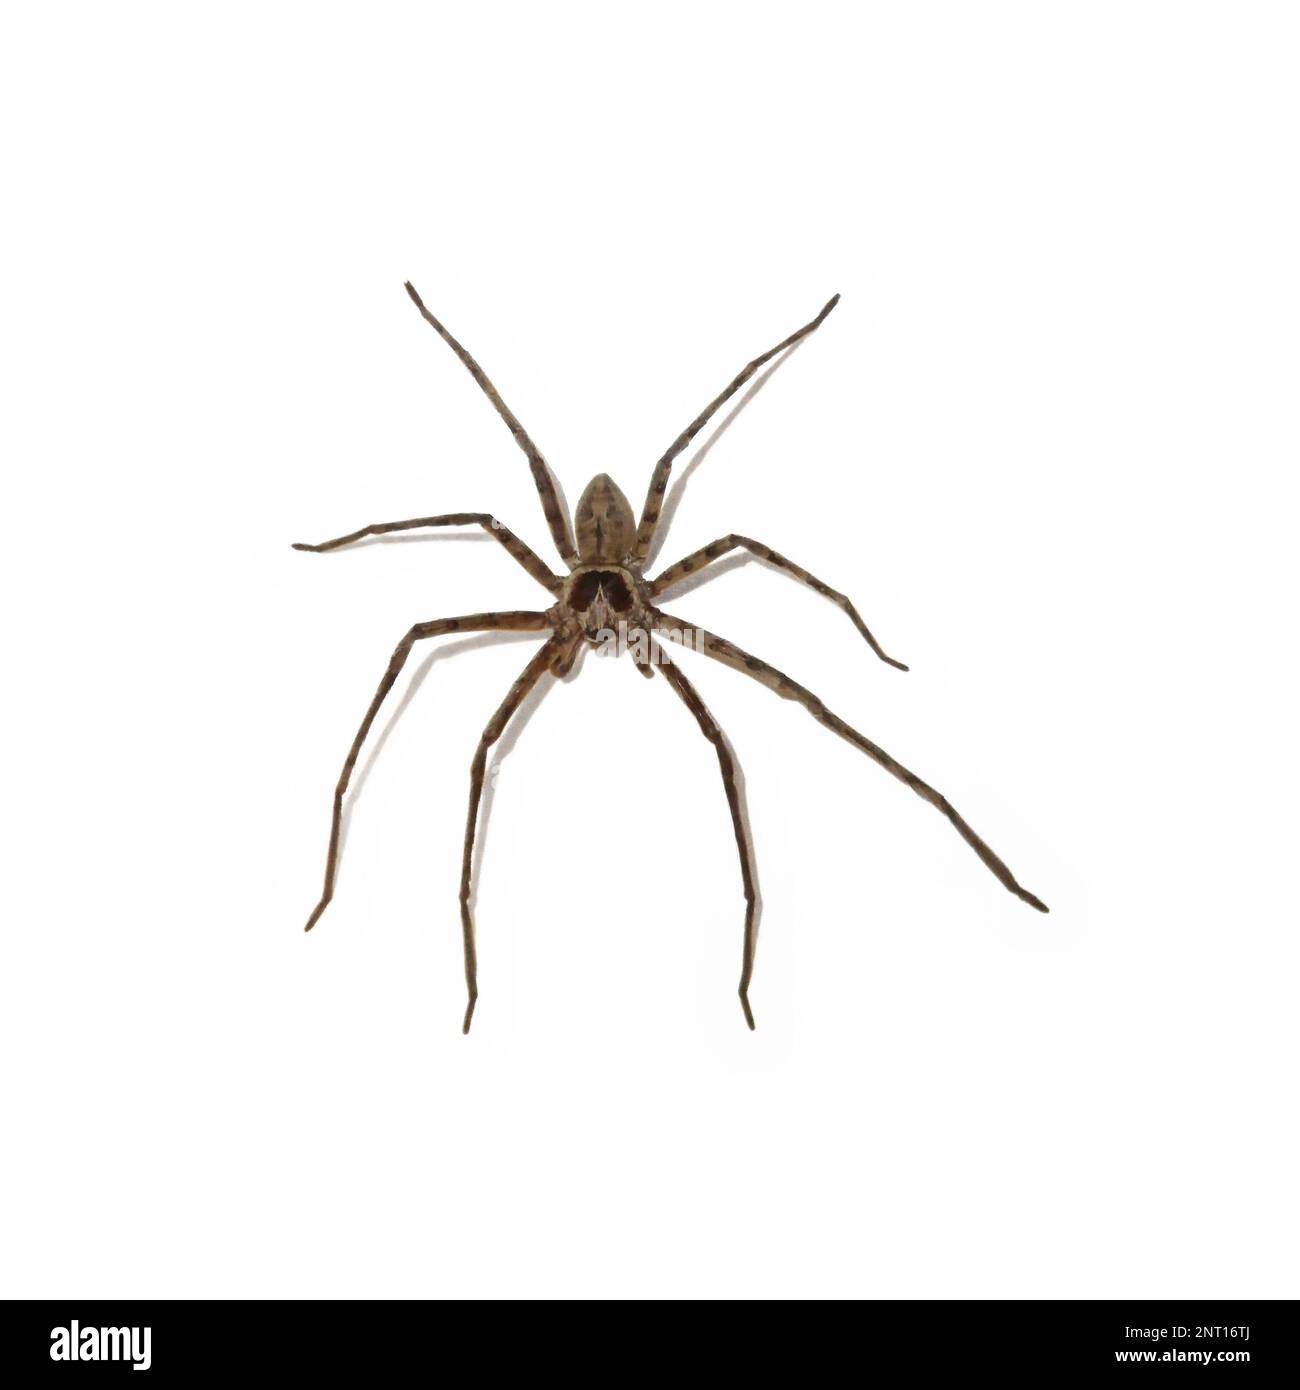 Heteropoda venatoria ist eine Spinnenart in der Familie der Sparassidae, der Jagdspinnen. Stockfoto